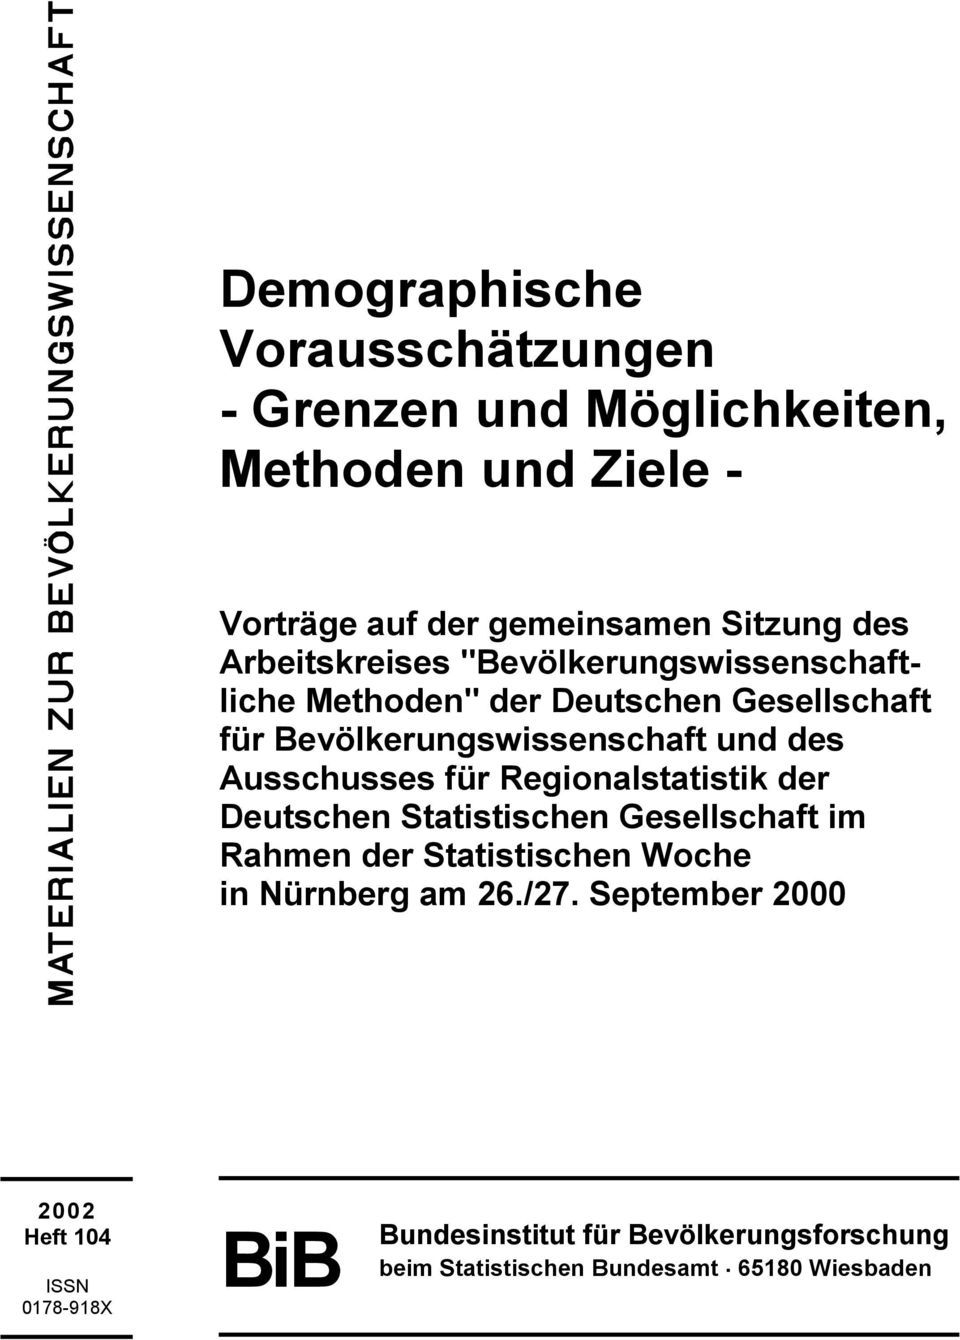 Ausschusses für Regionalstatistik der Deutschen Statistischen Gesellschaft im Rahmen der Statistischen Woche in Nürnberg am 26.